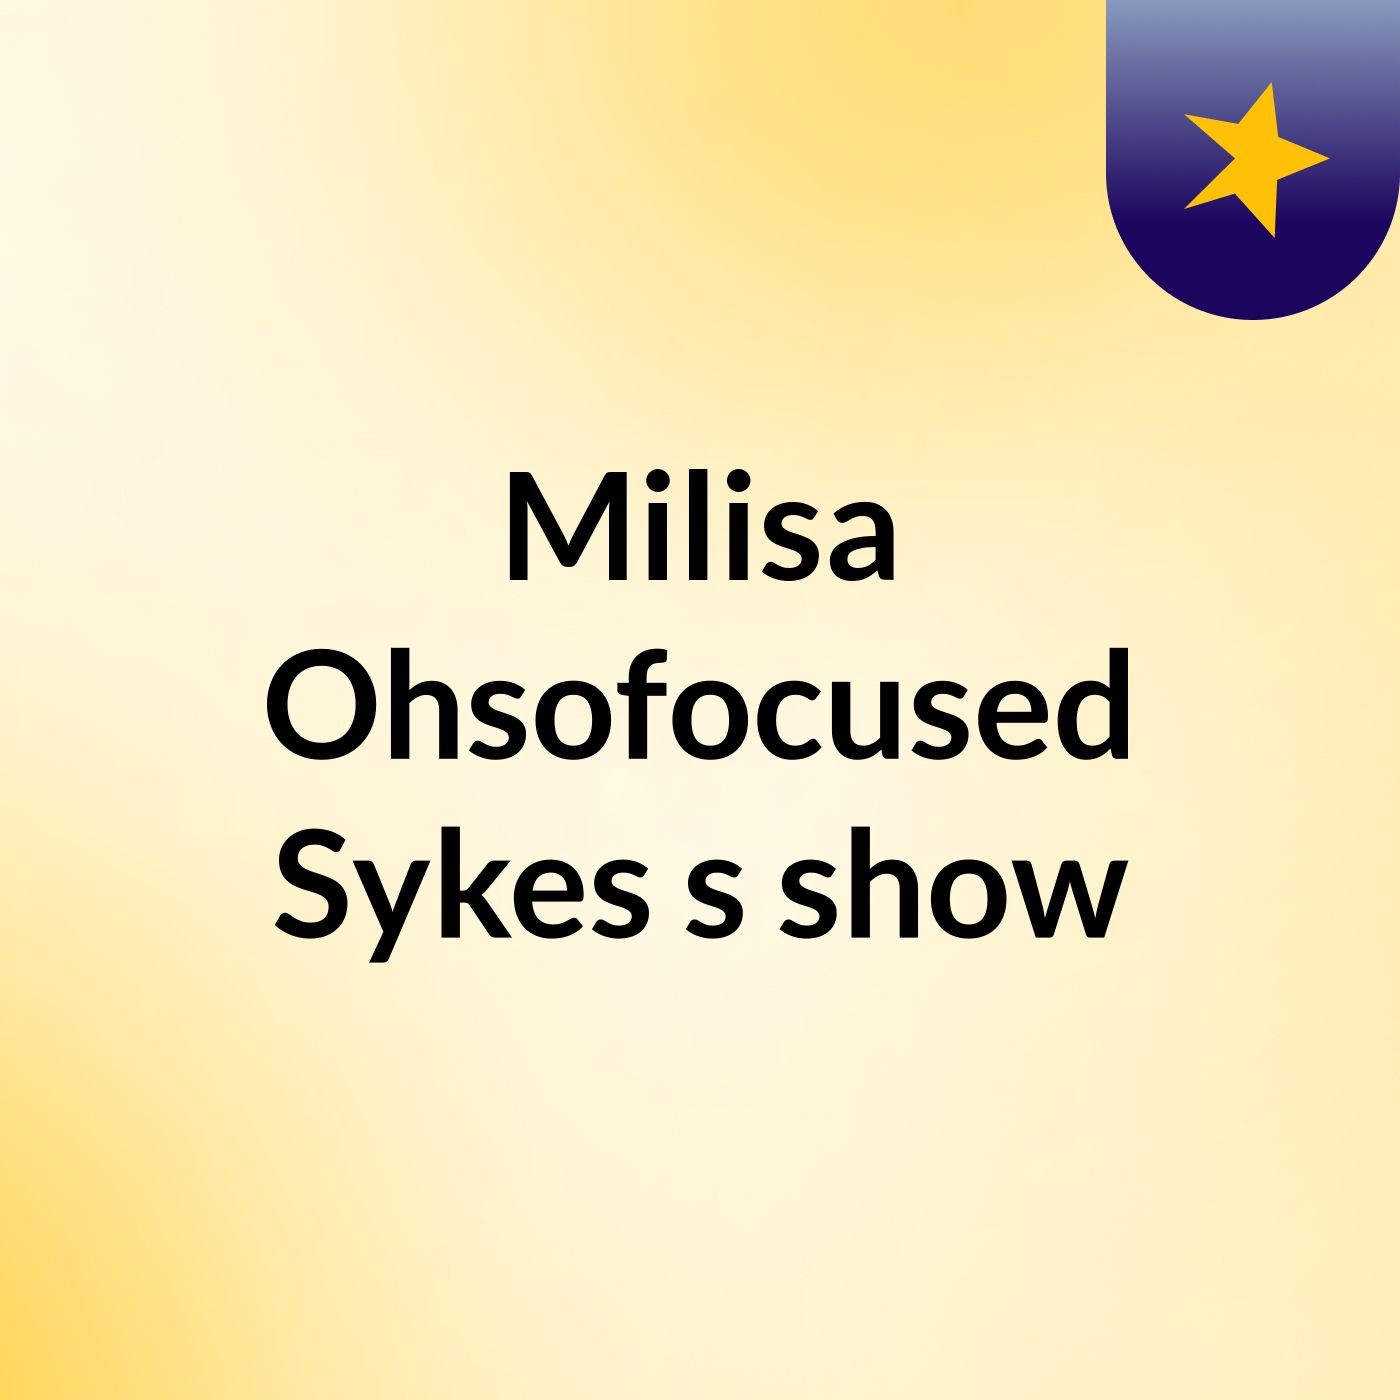 Milisa Ohsofocused Sykes's show